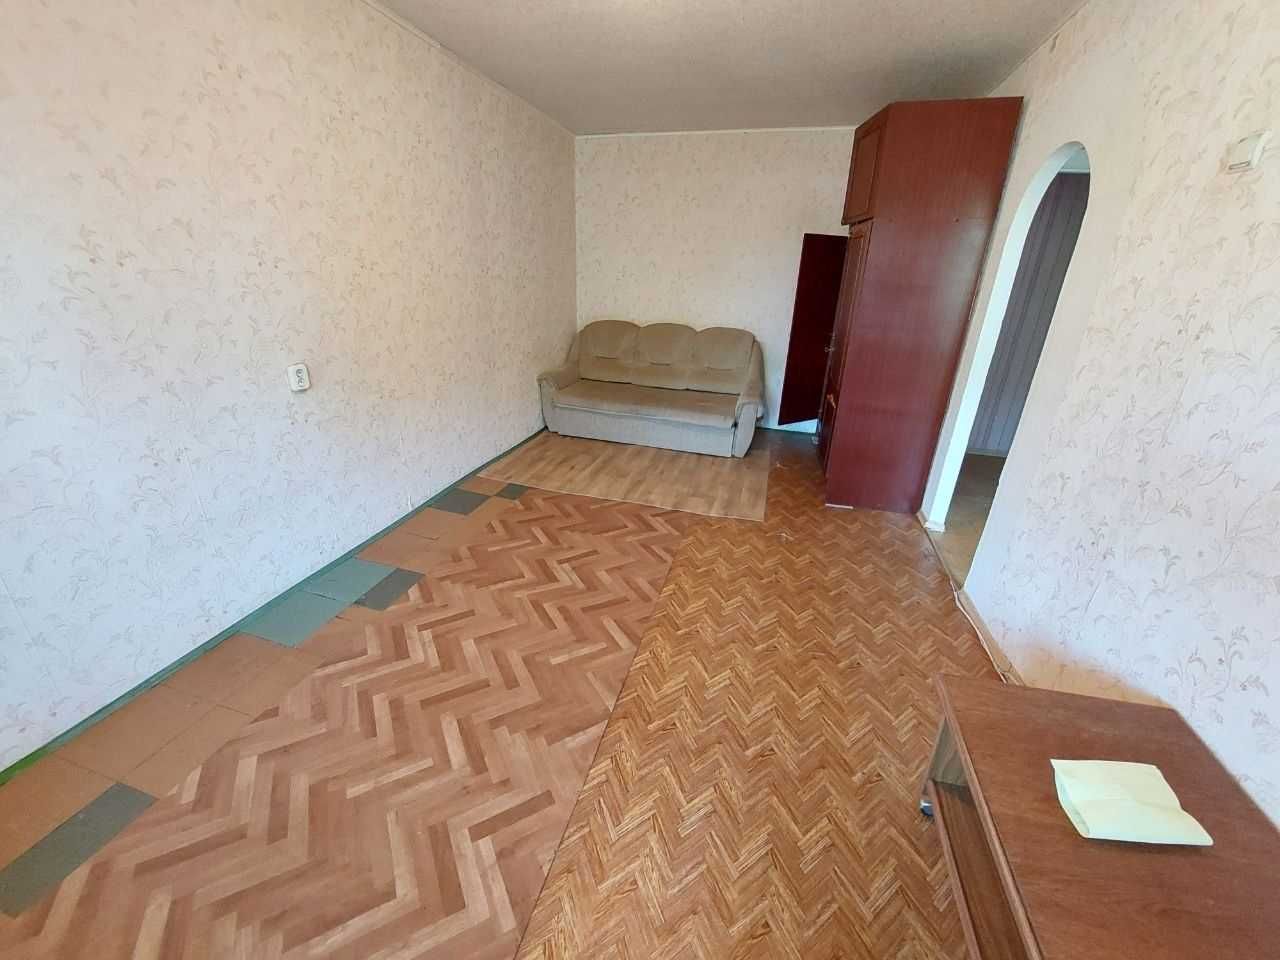 Продам 1 комнатную квартиру проспект Б.Хмельницкого ( начало)